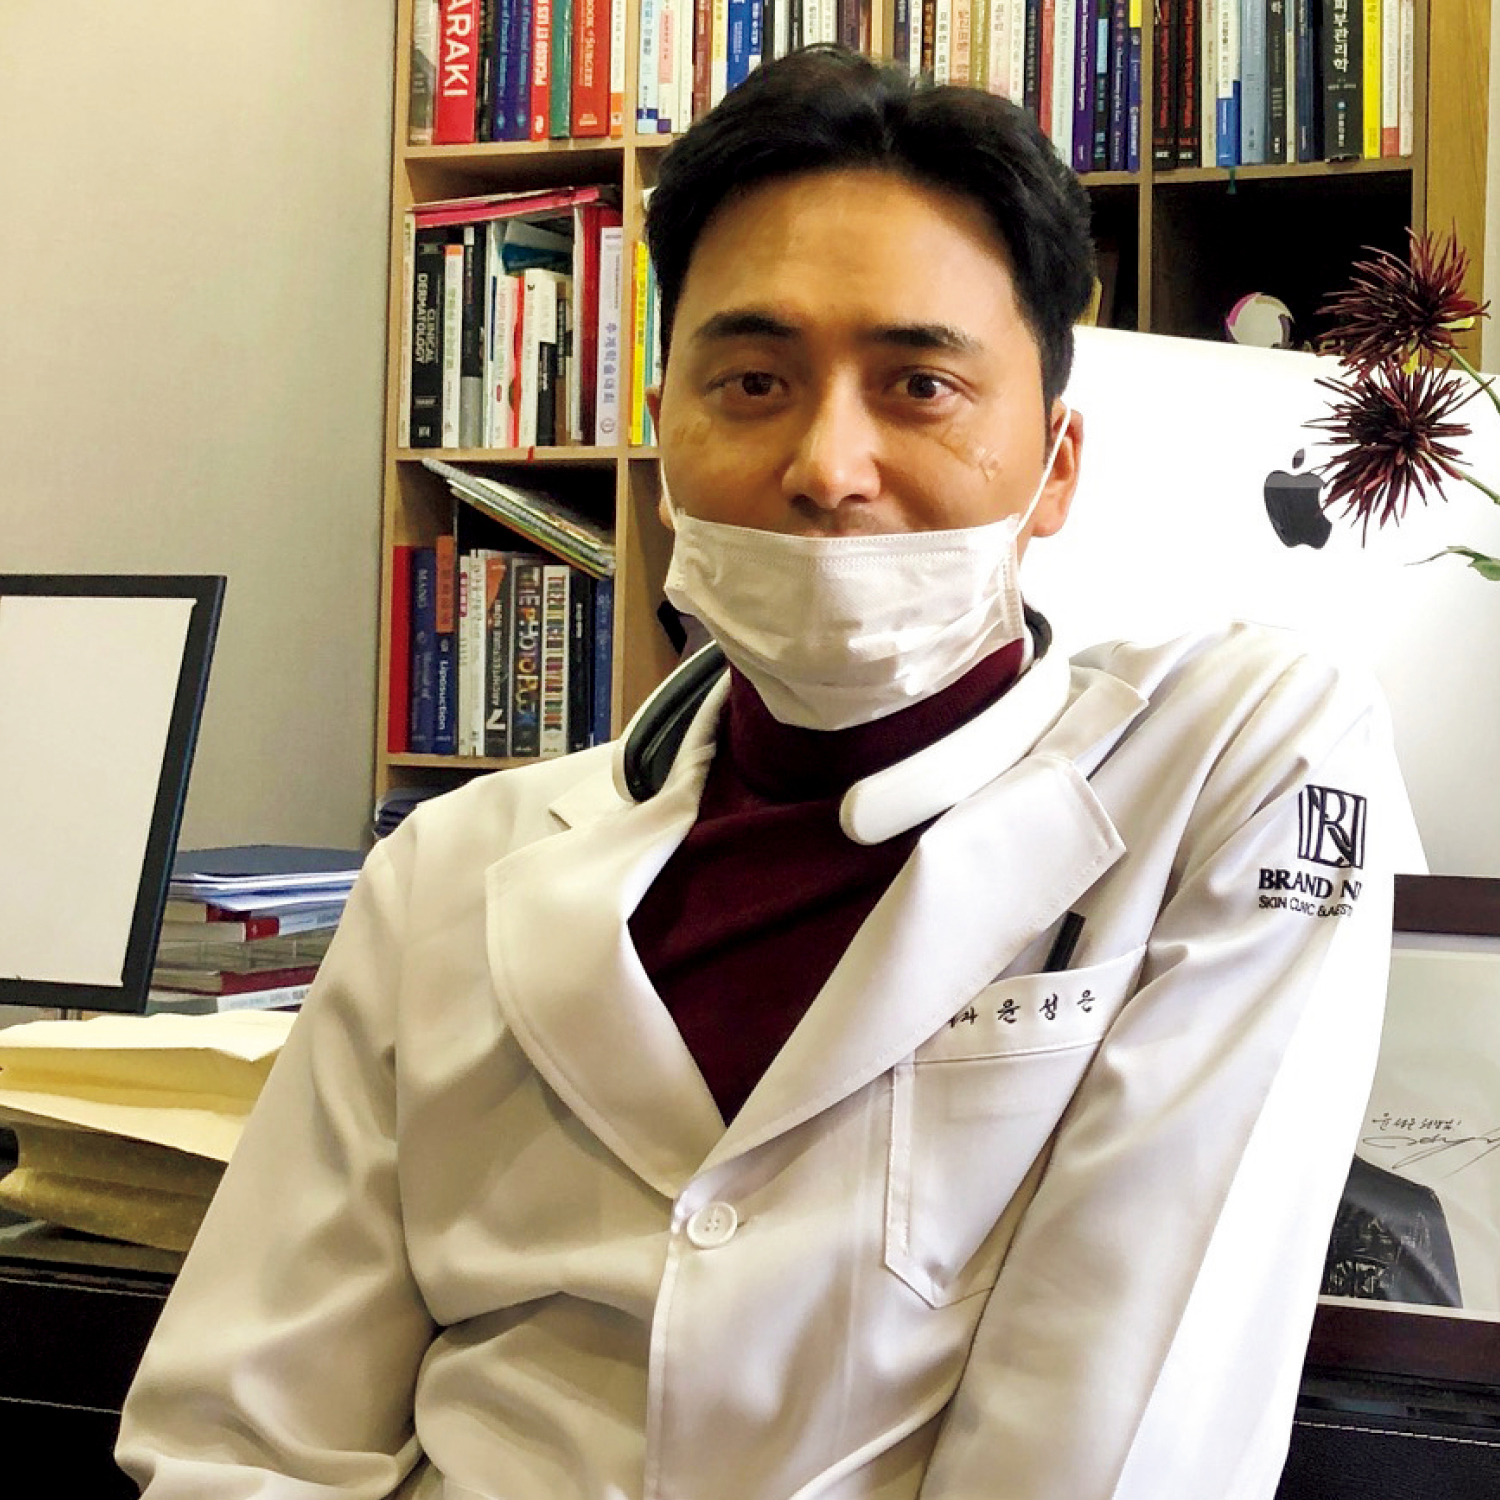 Dr.ユン。アグレッシブな治療のイメージがある韓国で、ダウンタイムがほぼないナチュラルな施術が支持されています